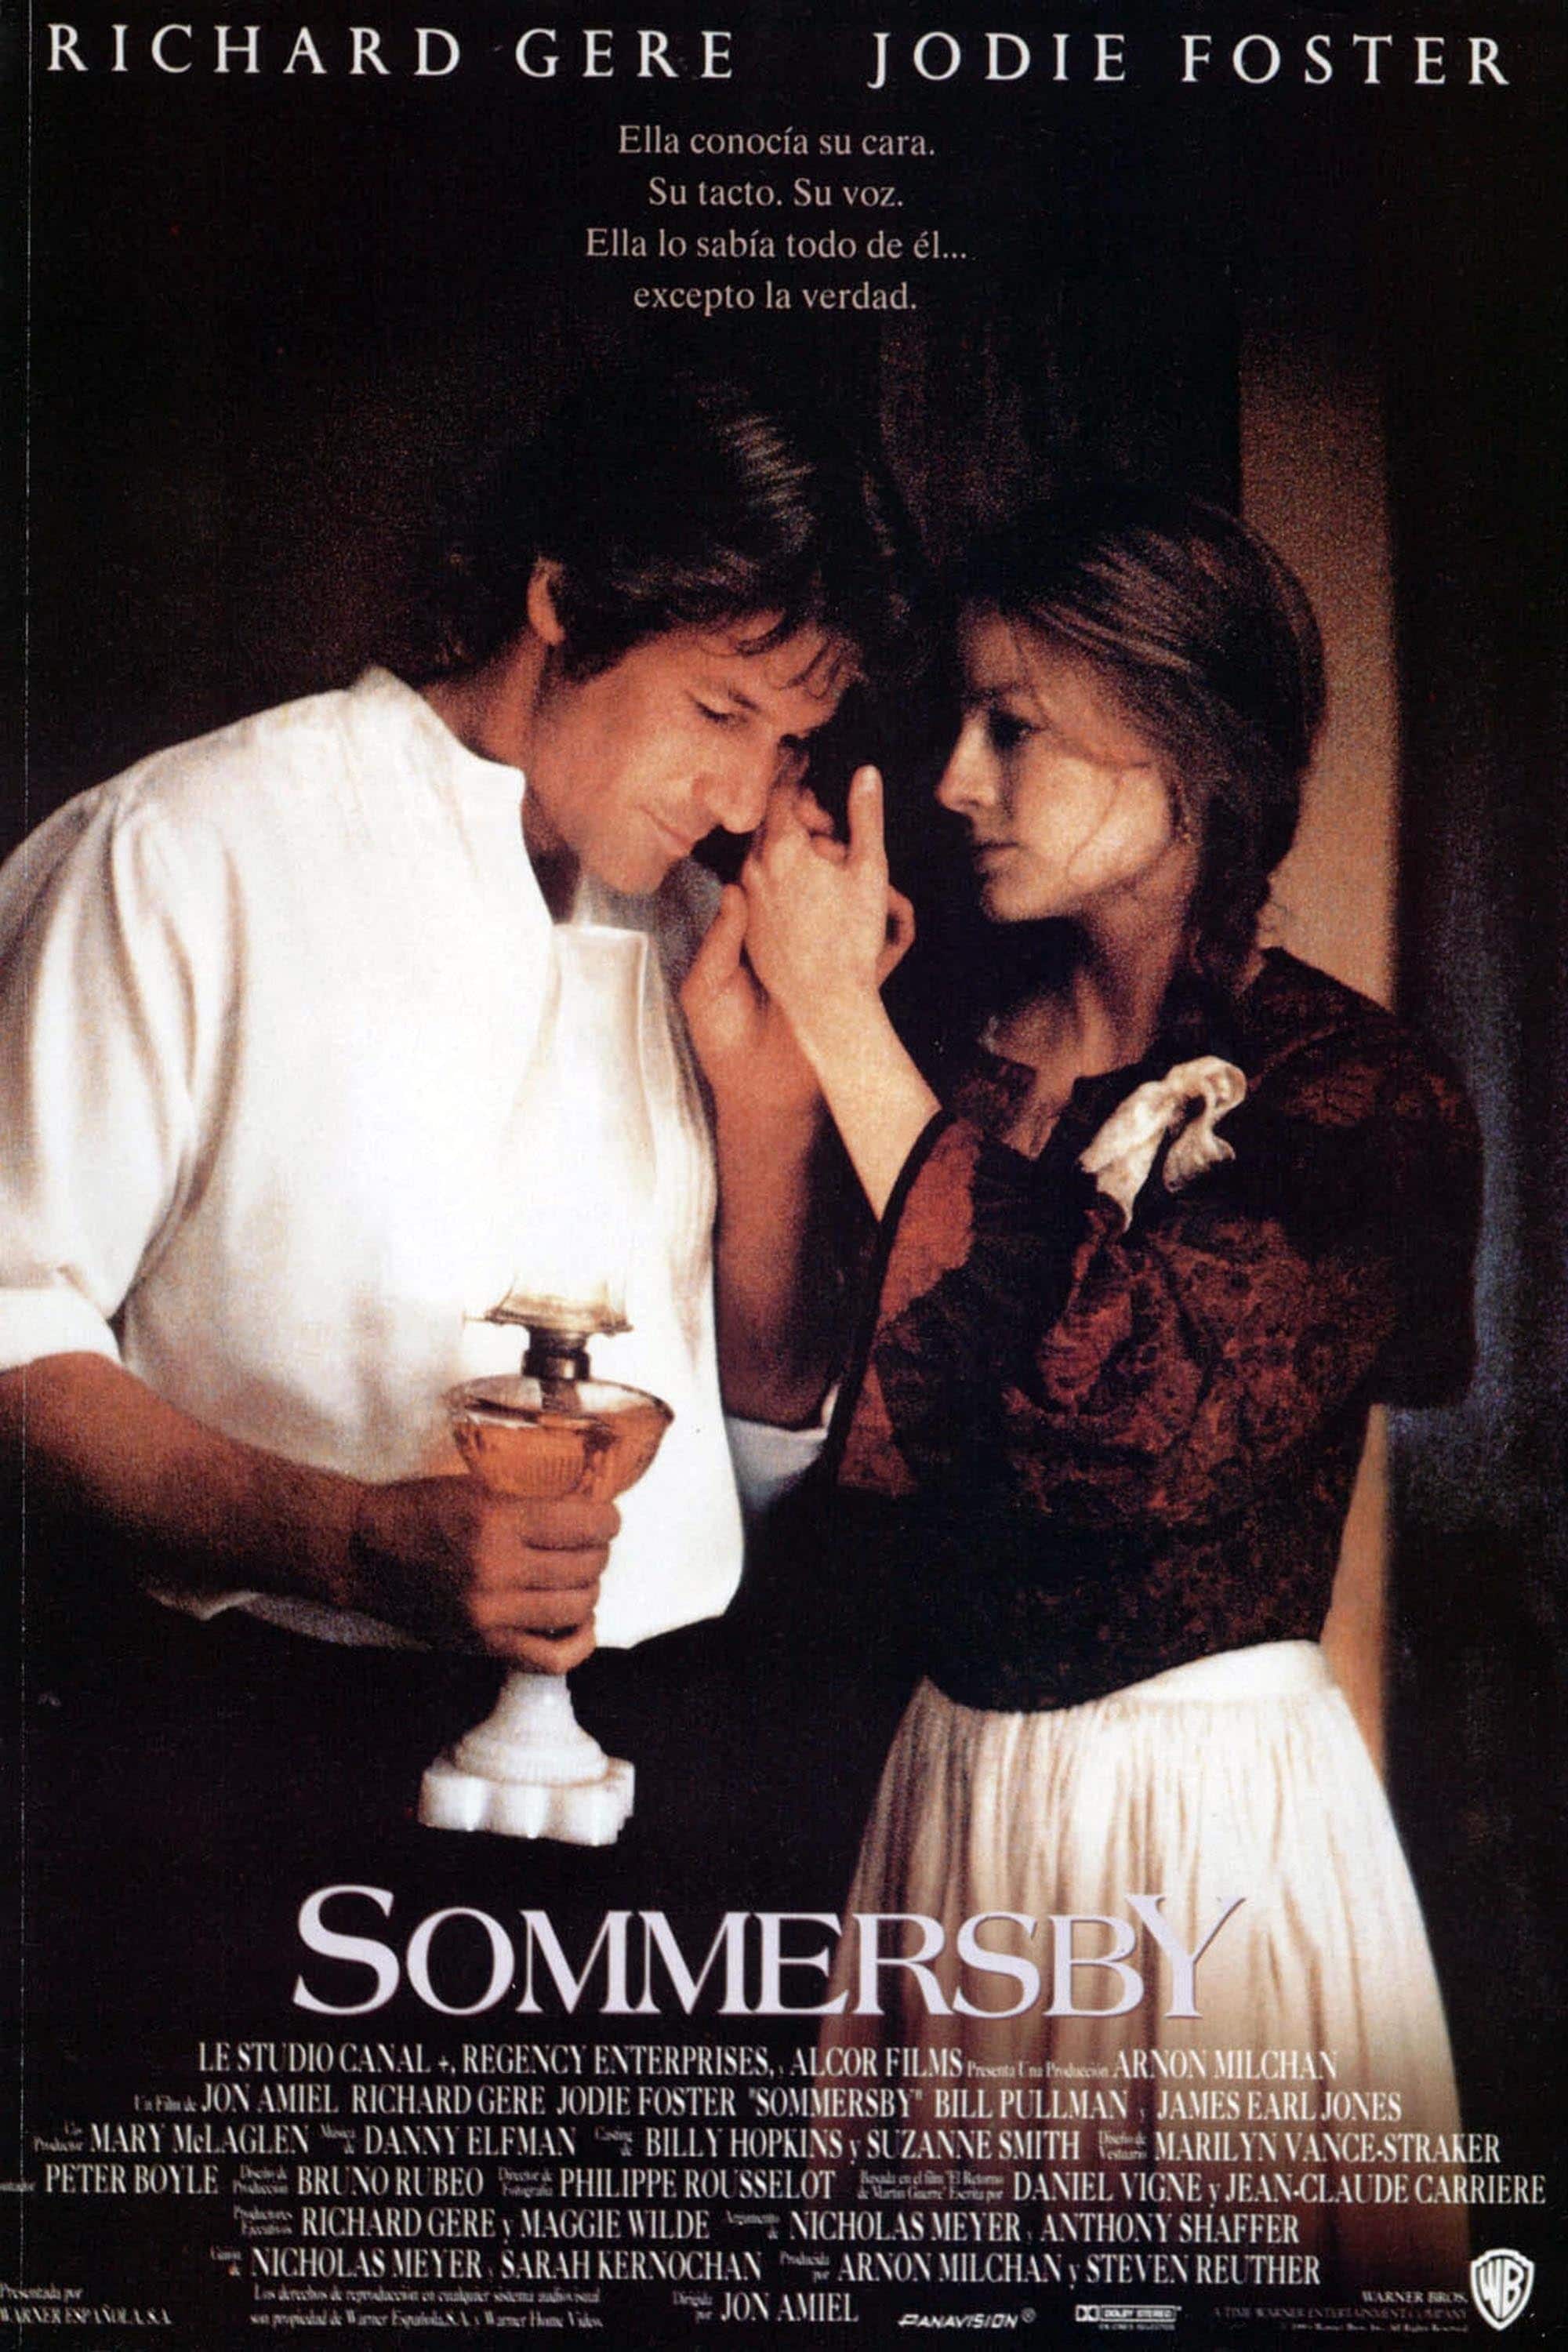 Plakat von "Sommersby"